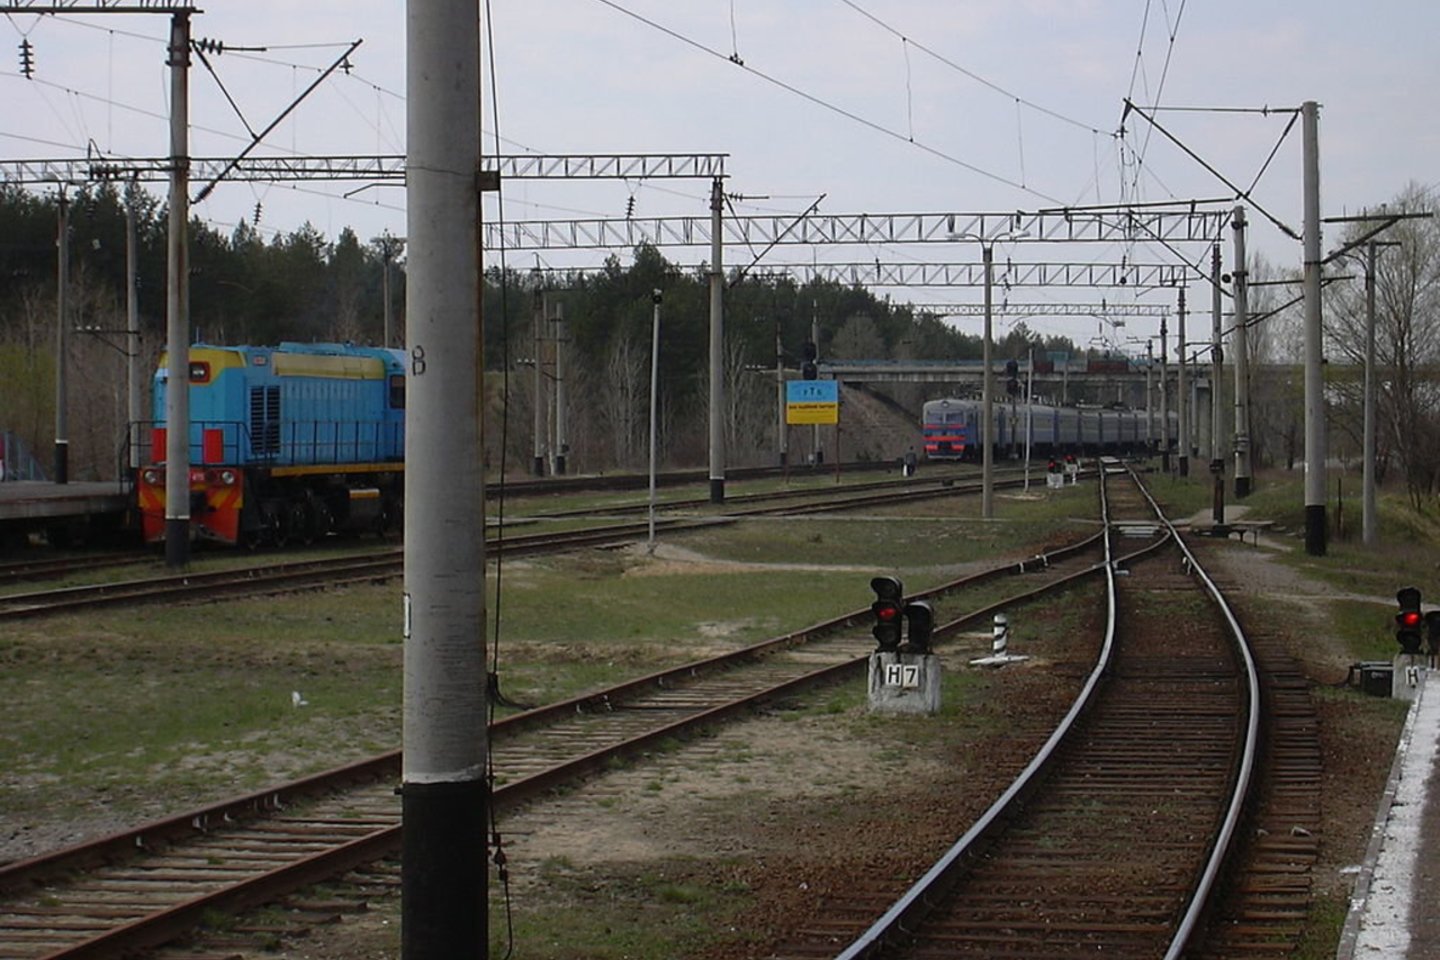  Traukinys iš Slavutičiaus į Černobylį trumpam įvažiuoja į Rusijos sąjungininkės Baltarusijos teritoriją.<br>Wikimedia Commons.